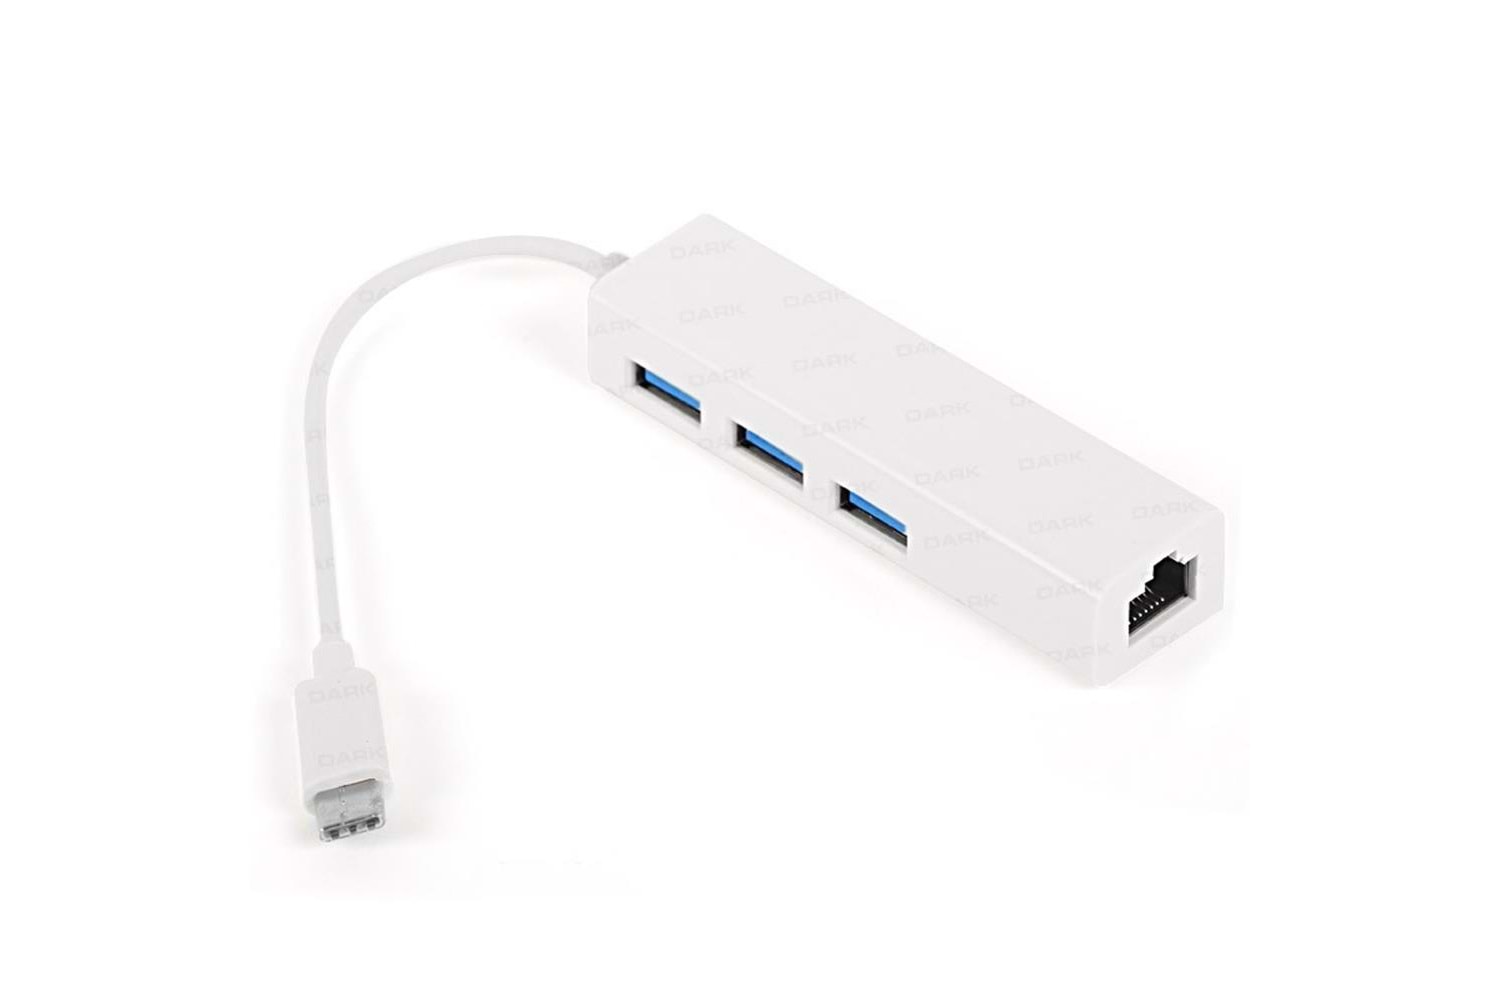 Dark DK-AC-U31X3GLWP USB Type-C to RJ45 Gigabit Ethernet ve 3xUSB 3.0 Hub Çoklayıcı Adaptör (Beyaz)